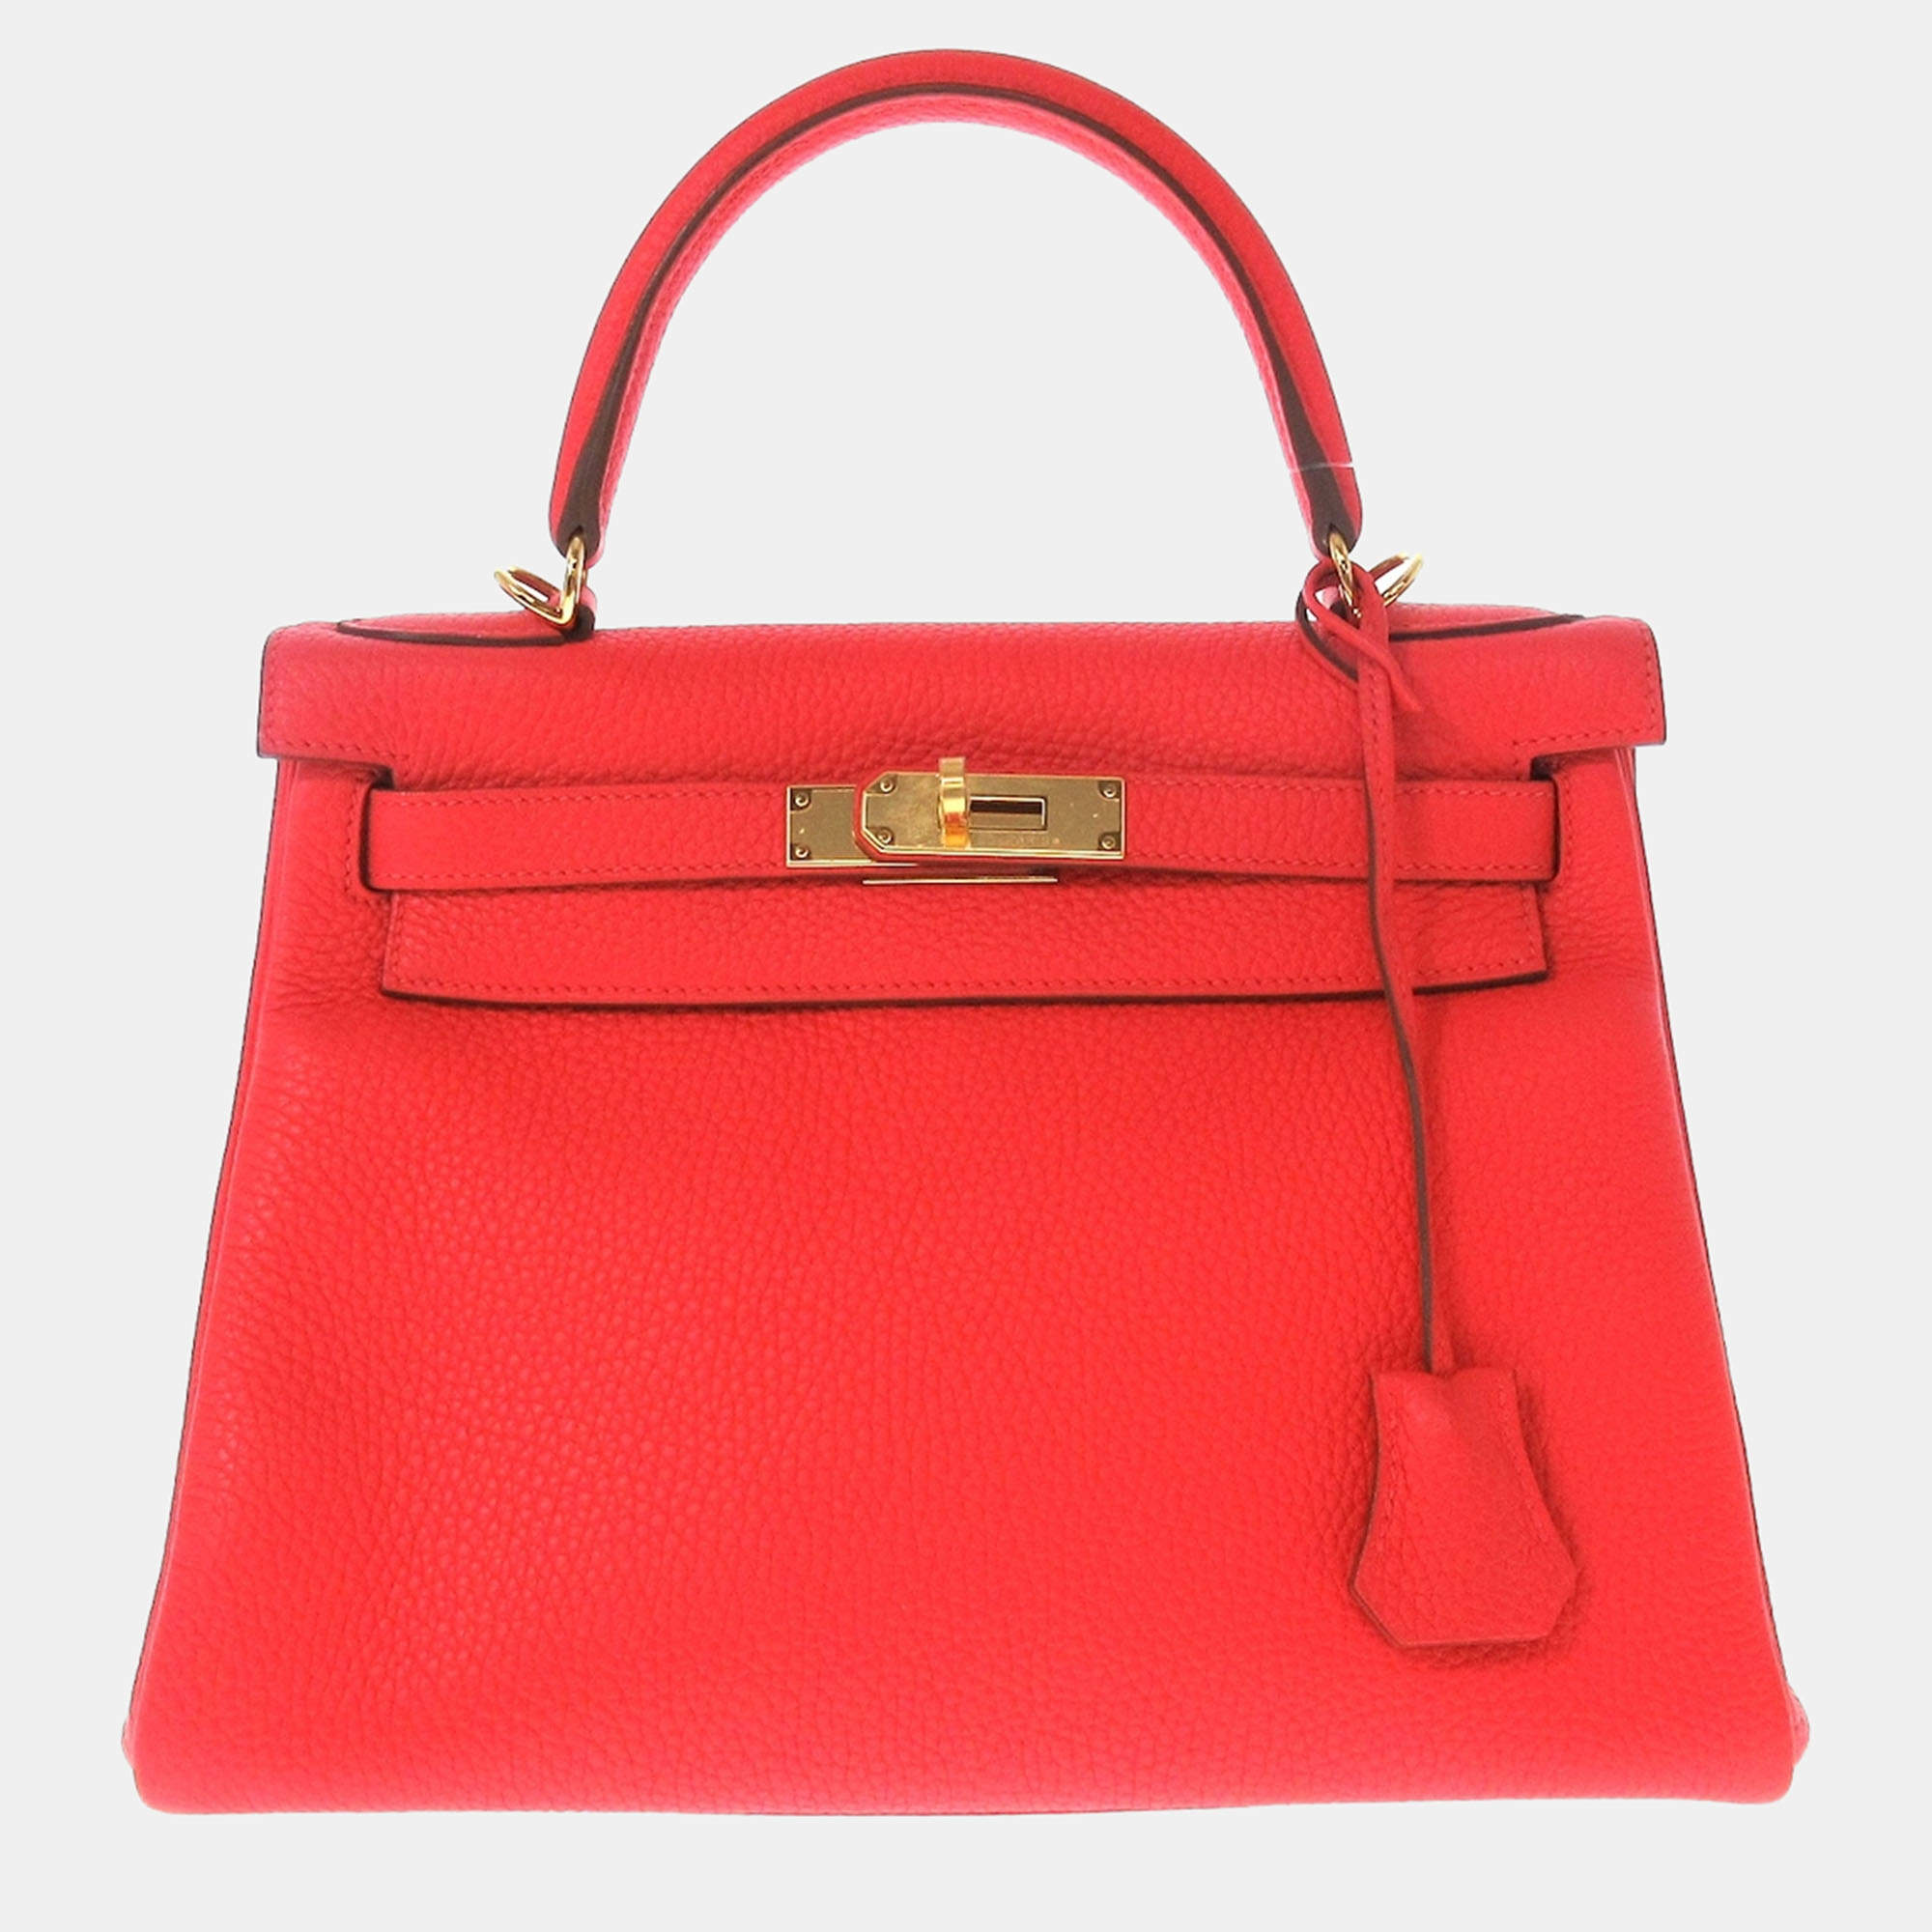 Hermes Red Handbags